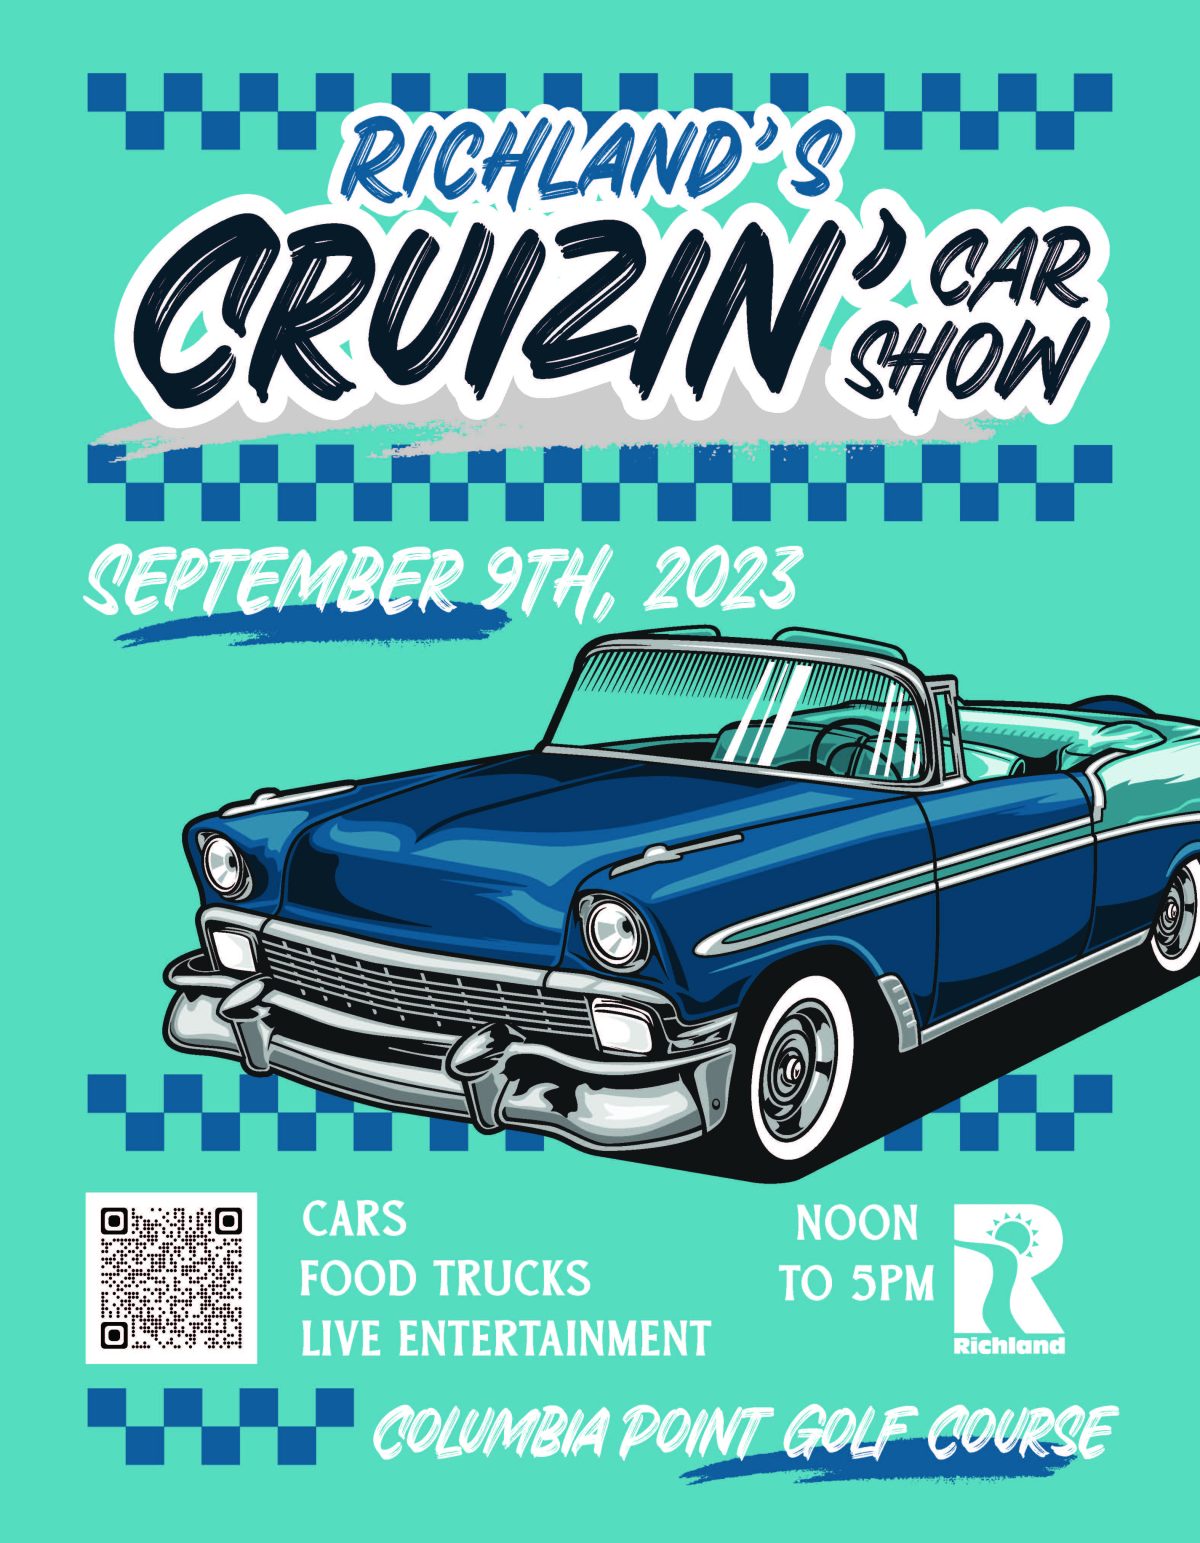 Richland’s Cruizin’ Car Show